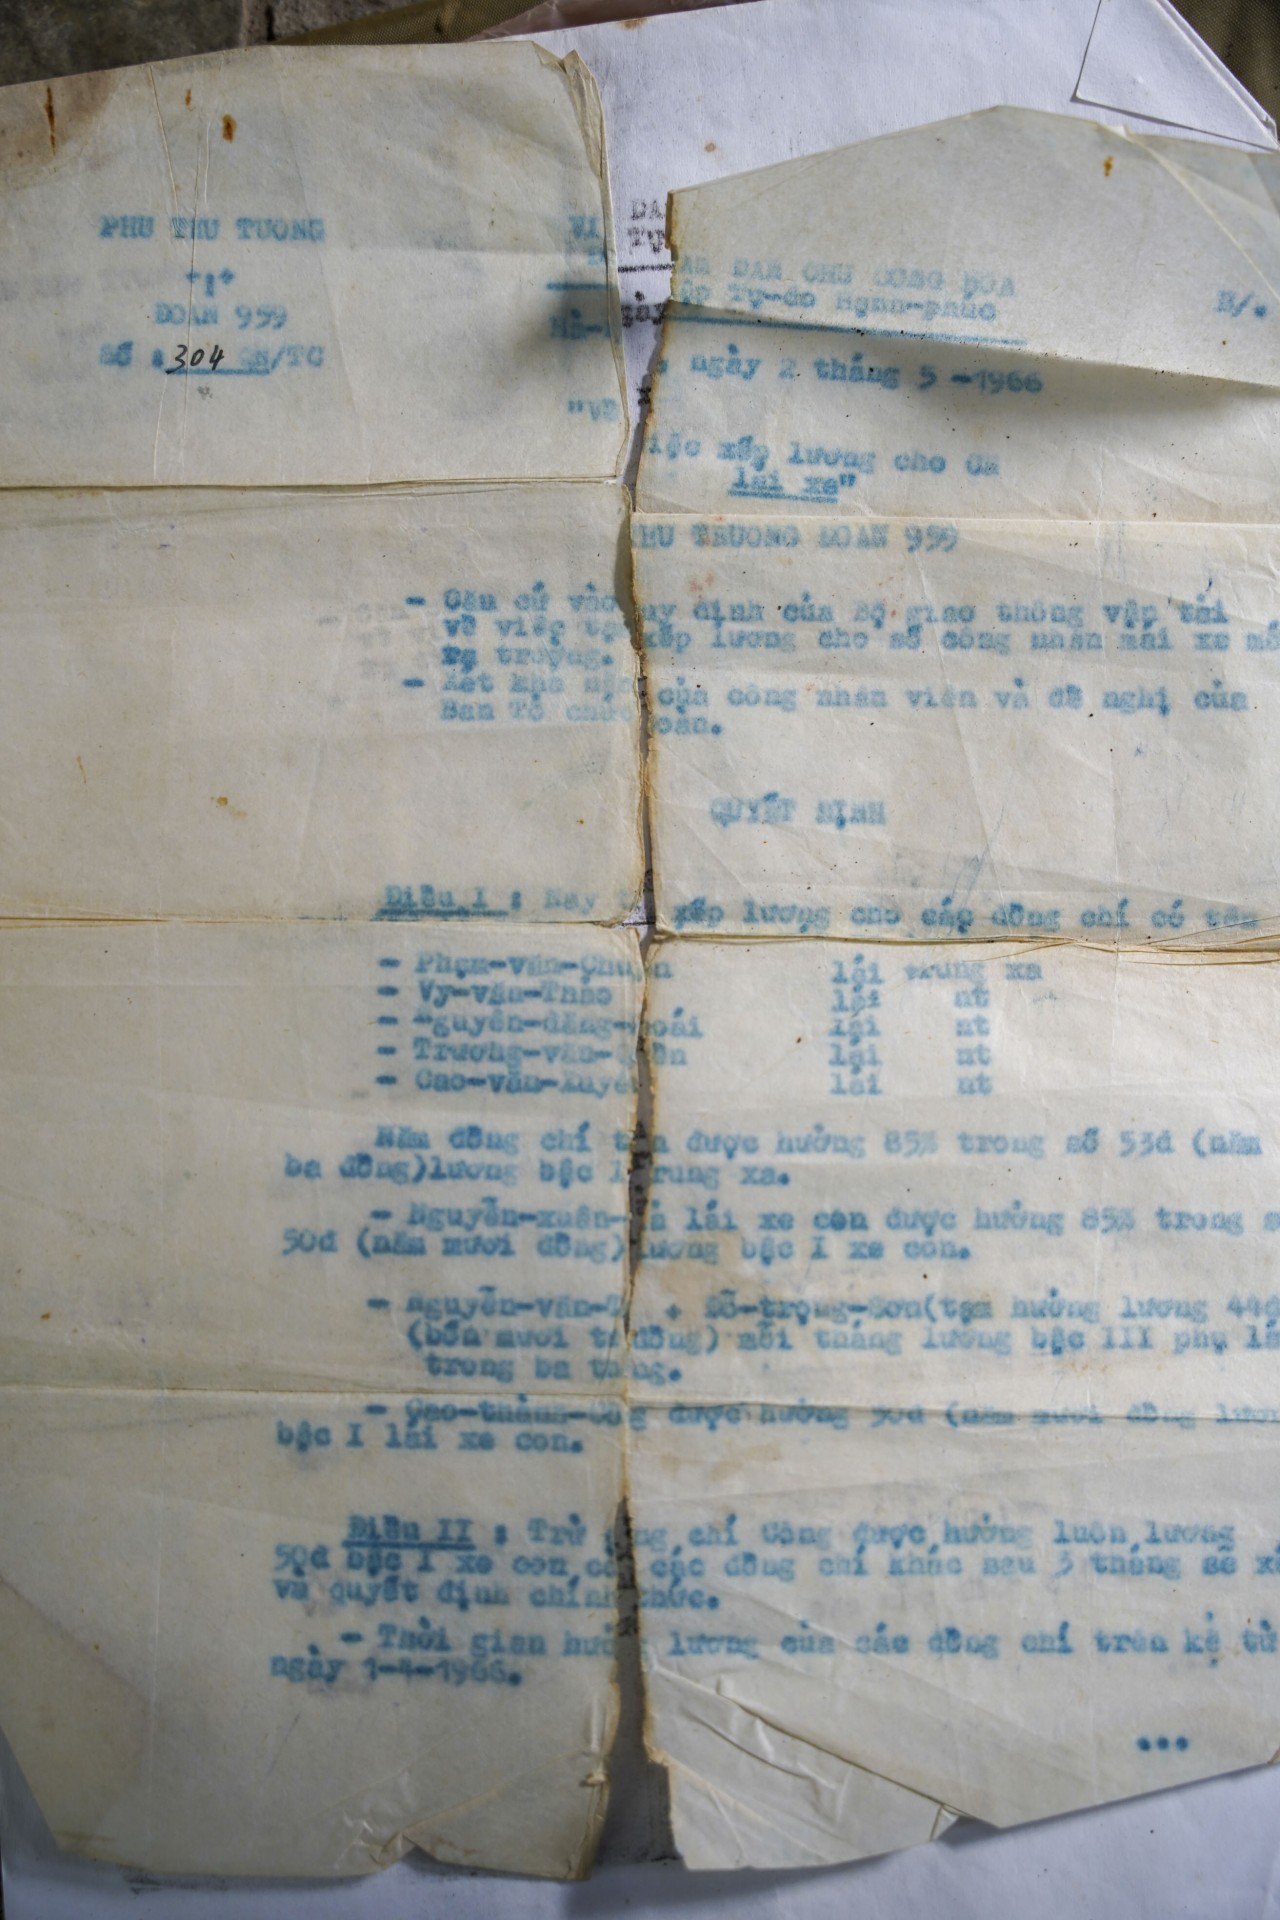 Quyết định xếp lương cho ông Chuyên và đồng đội, tháng 5/1966.